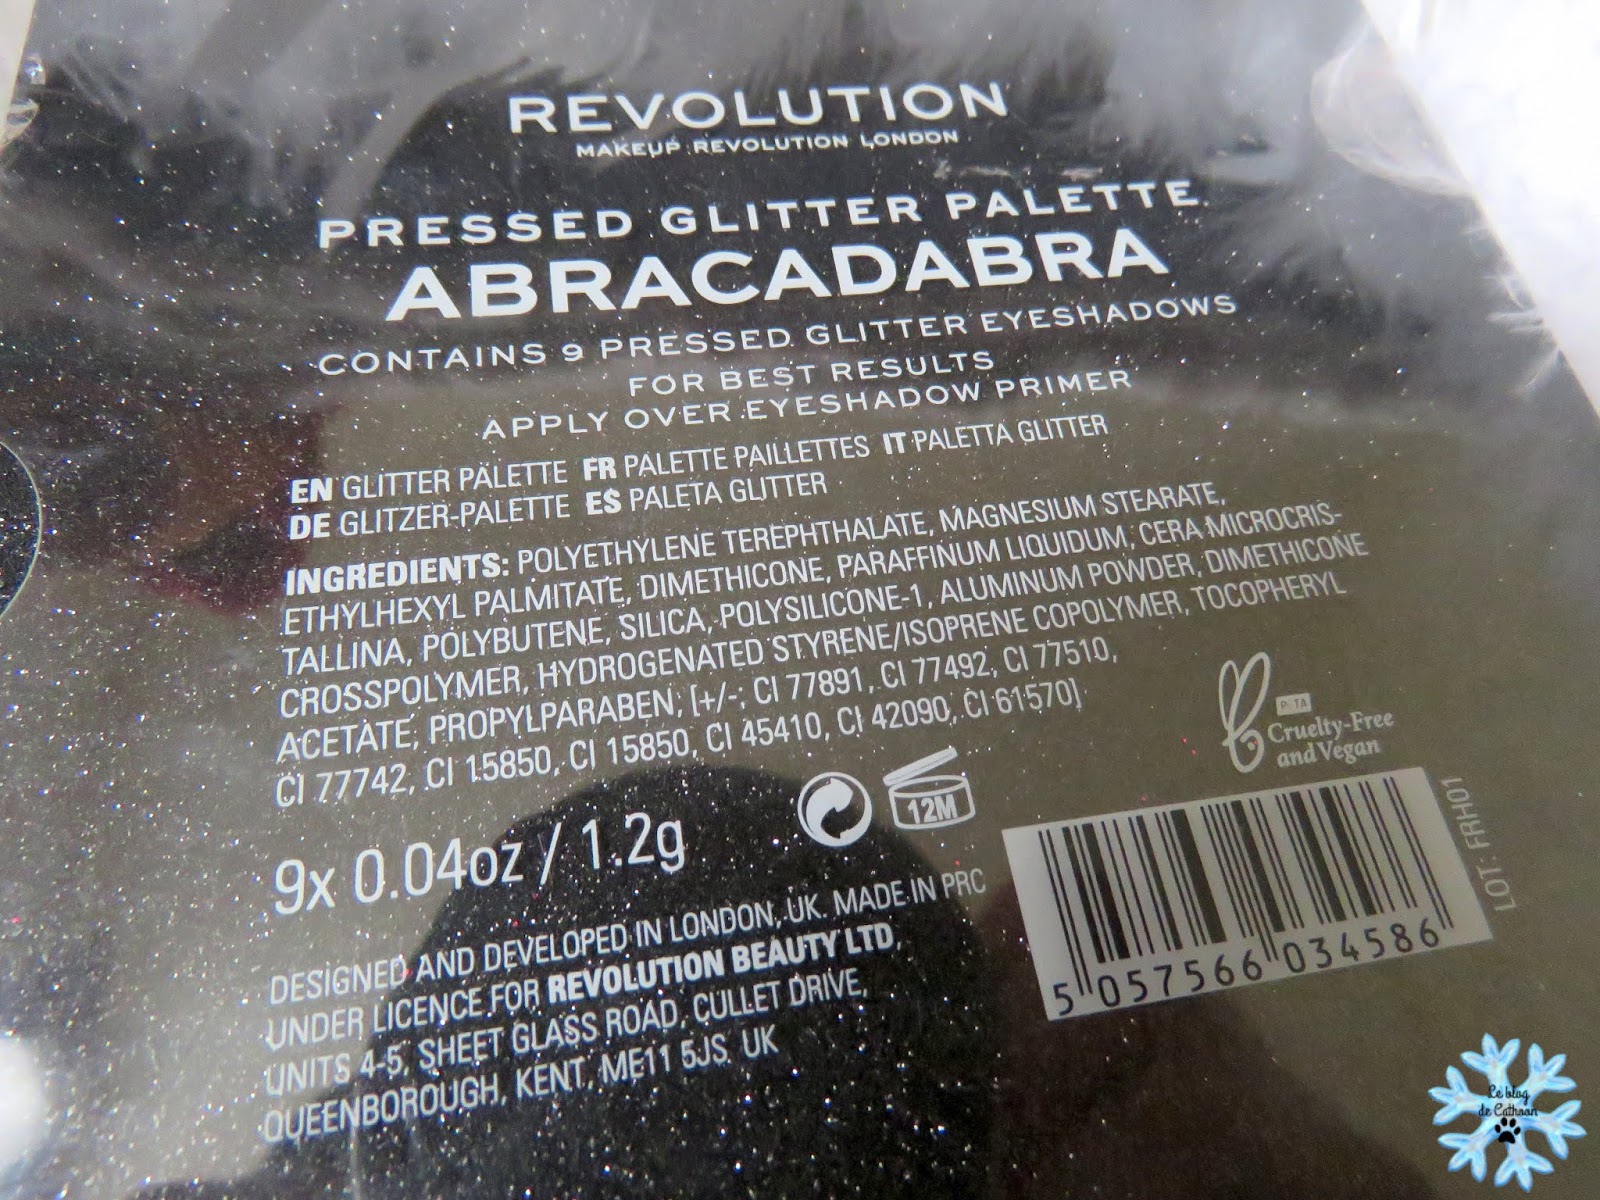 Abracadabra - Pressed Glitter Palette - Makeup Revolution